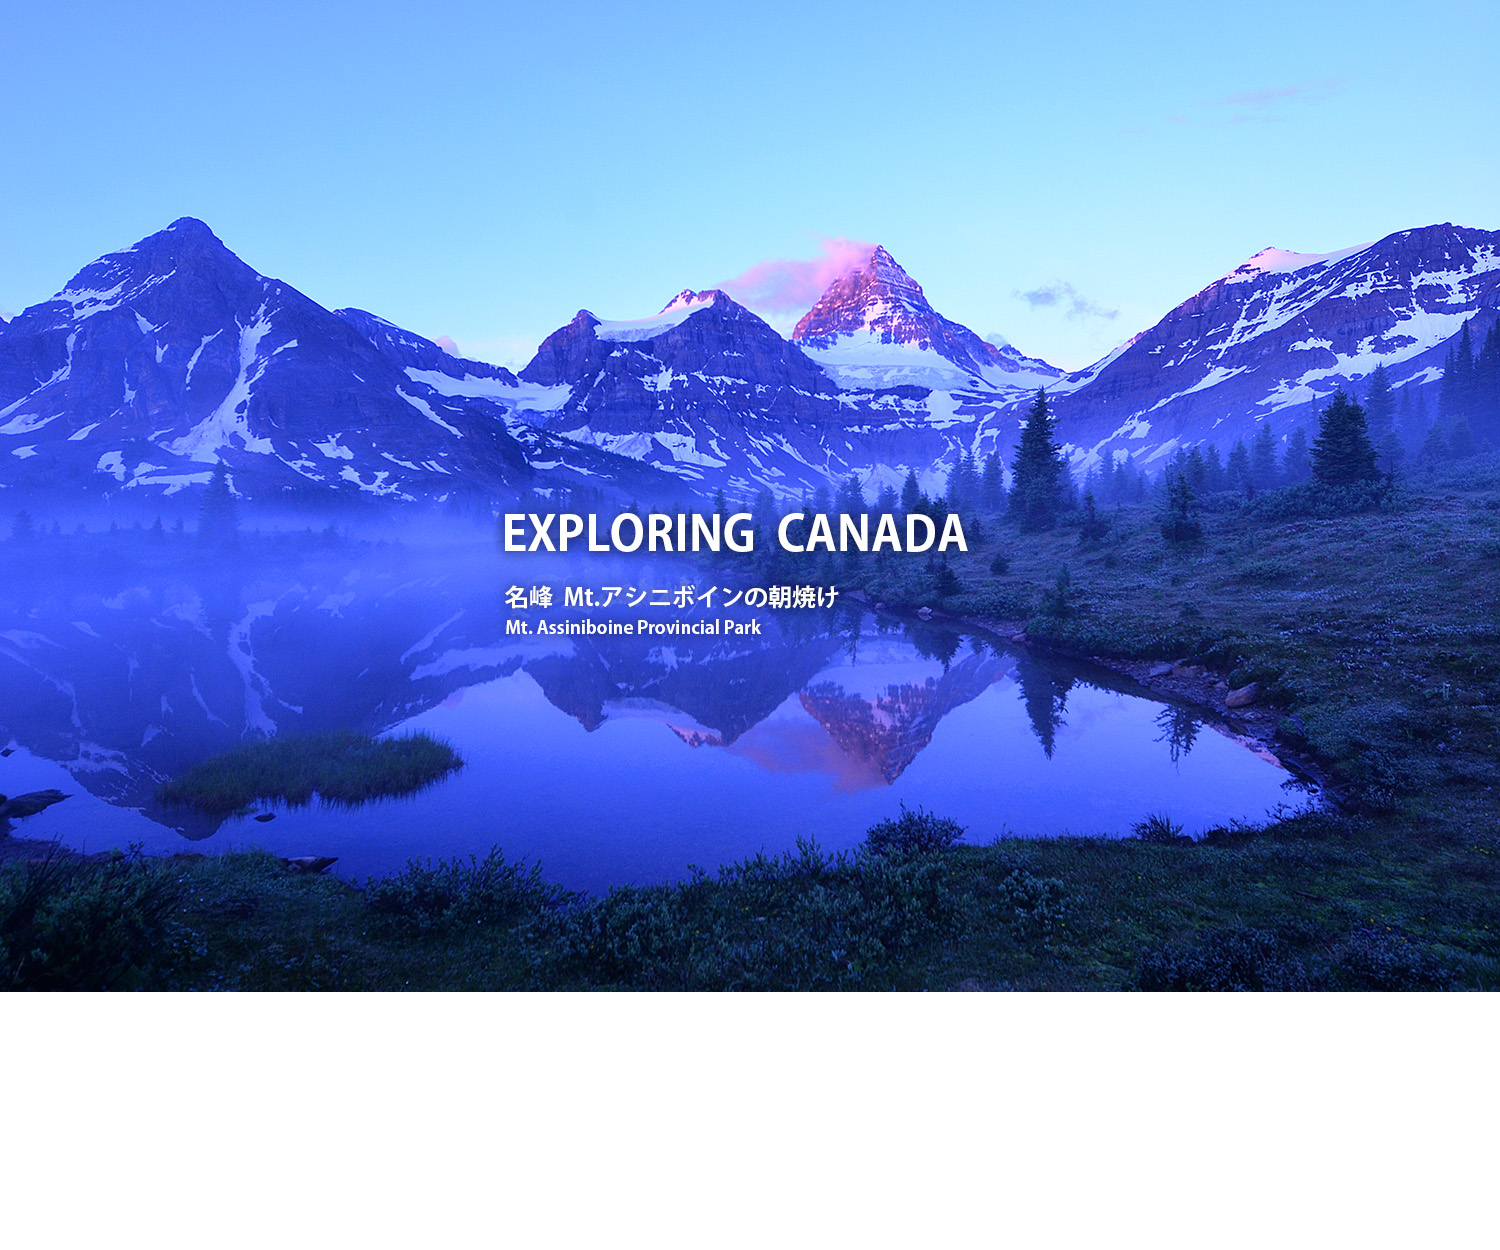 カナダの山旅 ハイキング専門サイト ヤムカナへようこそ カナディアンロッキー ユーコン トップ